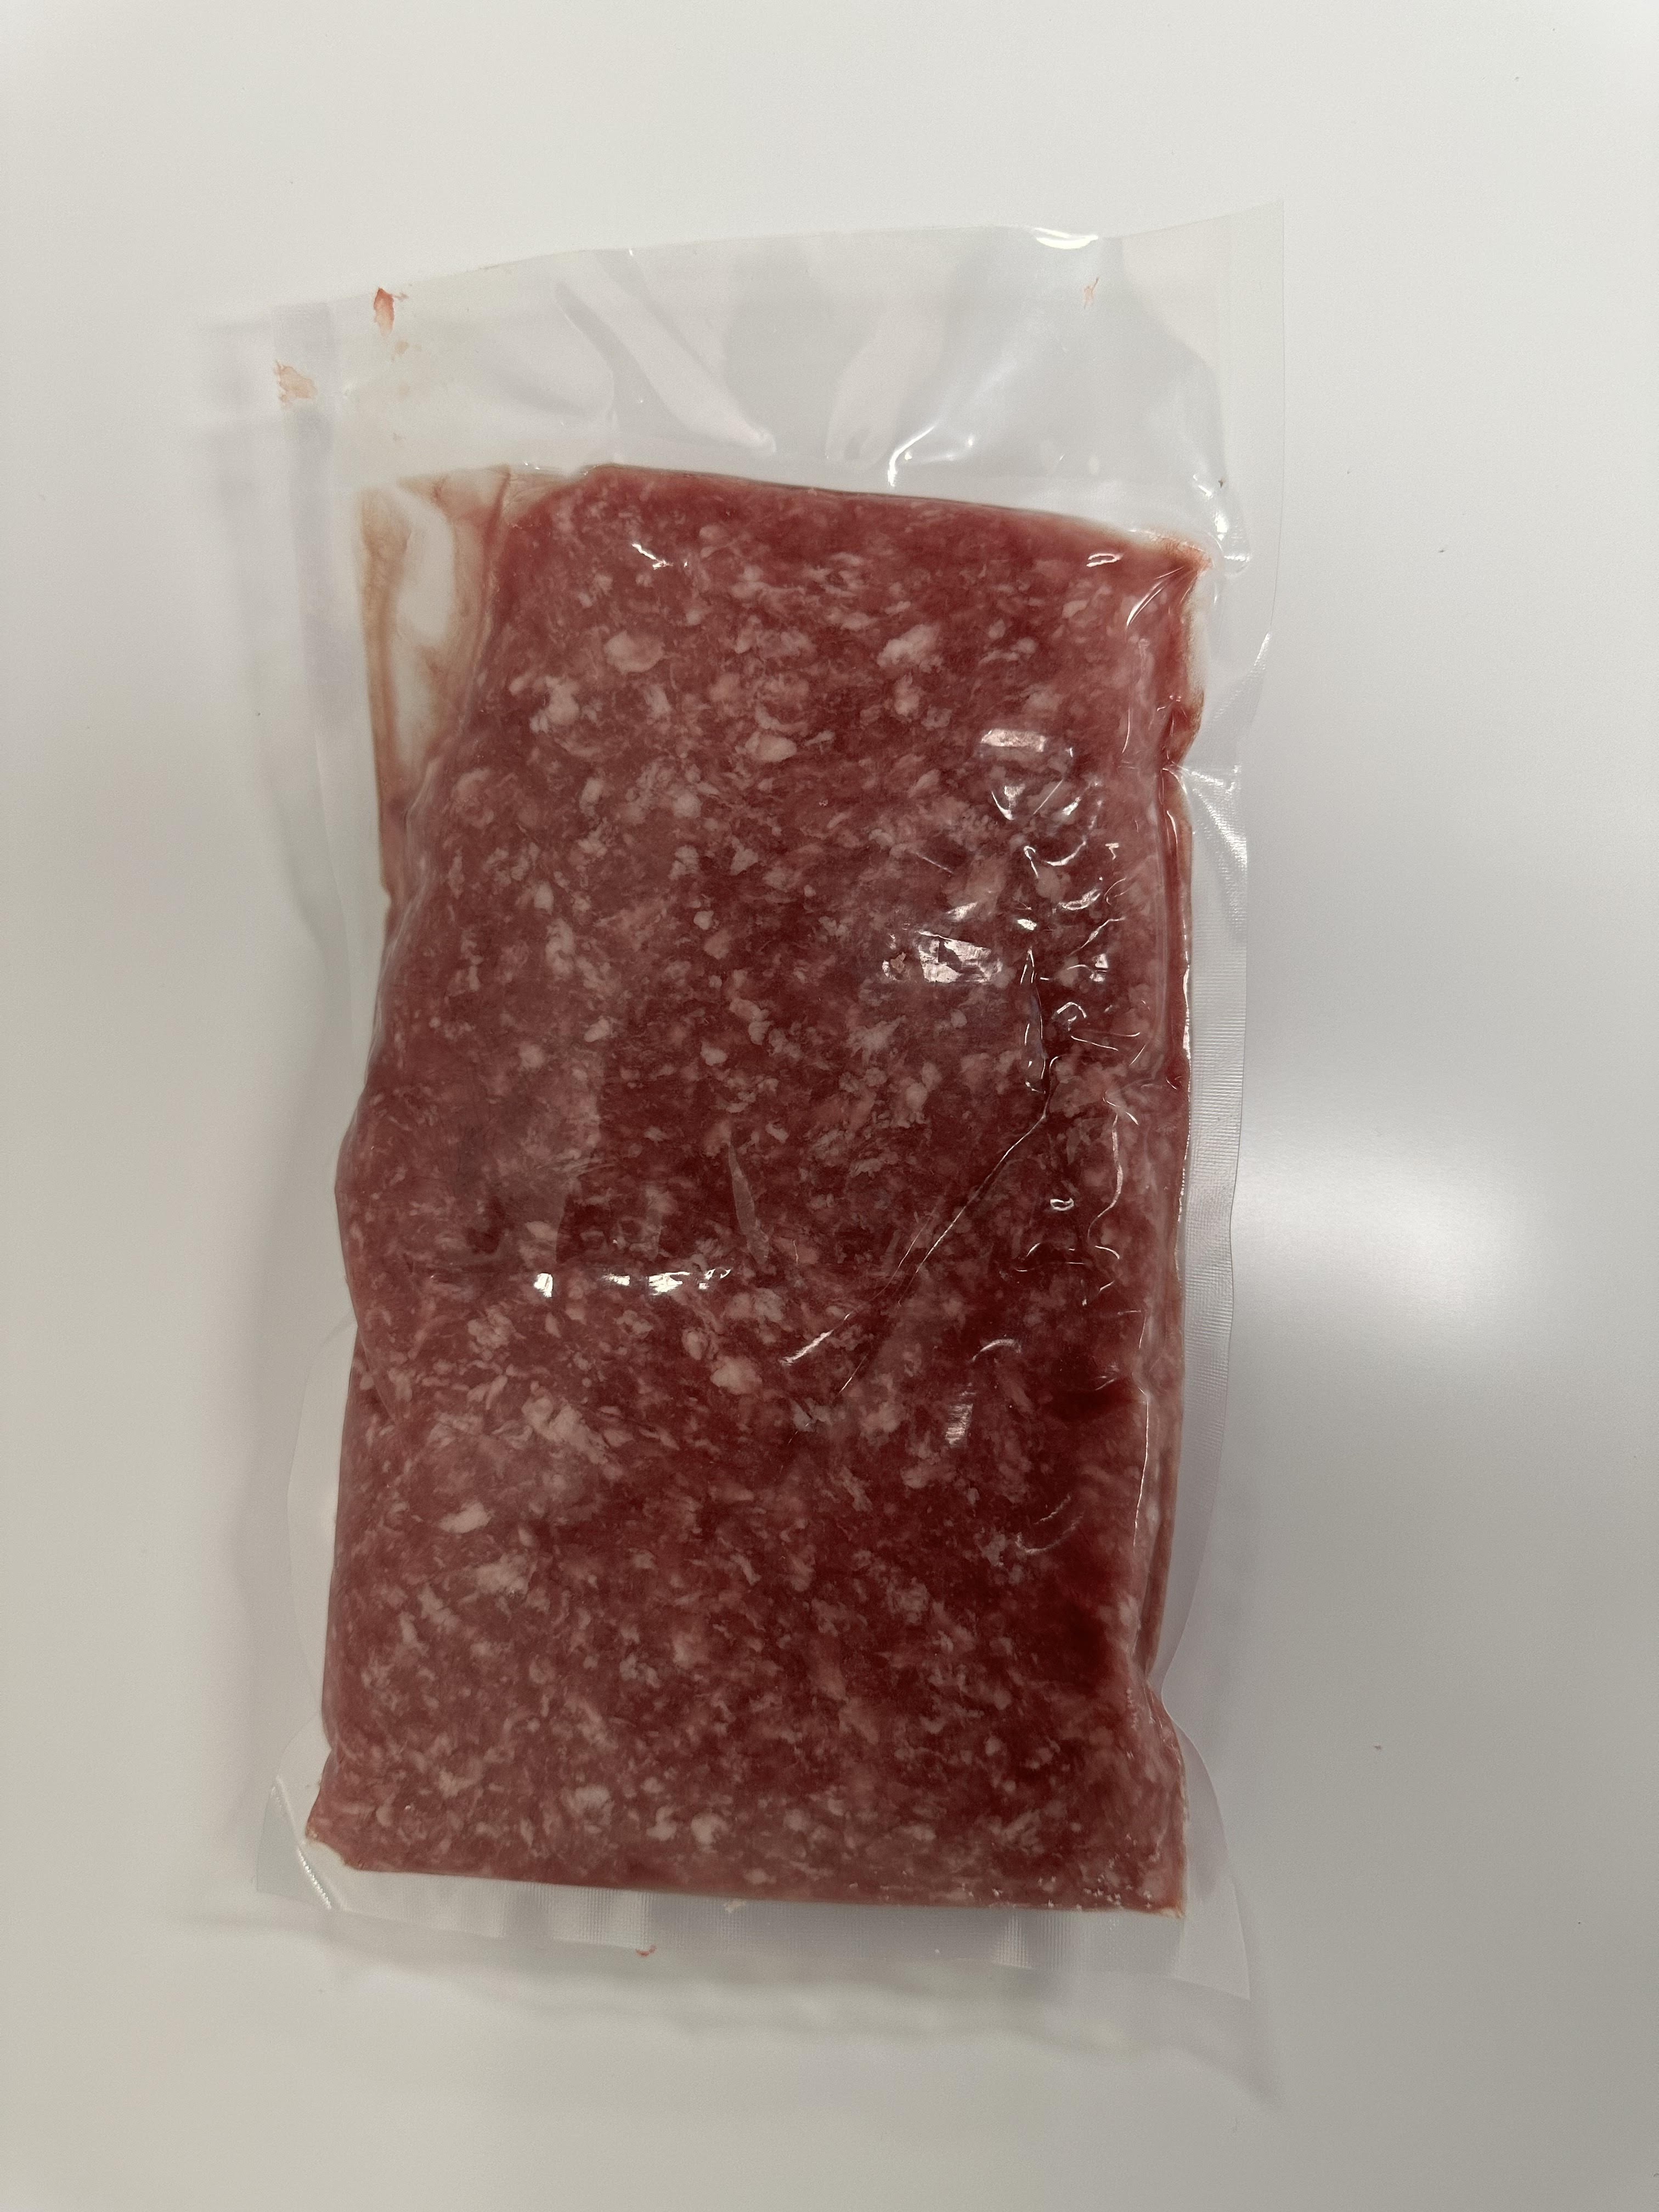 Frozen Ground Pork (1LB/Pack)